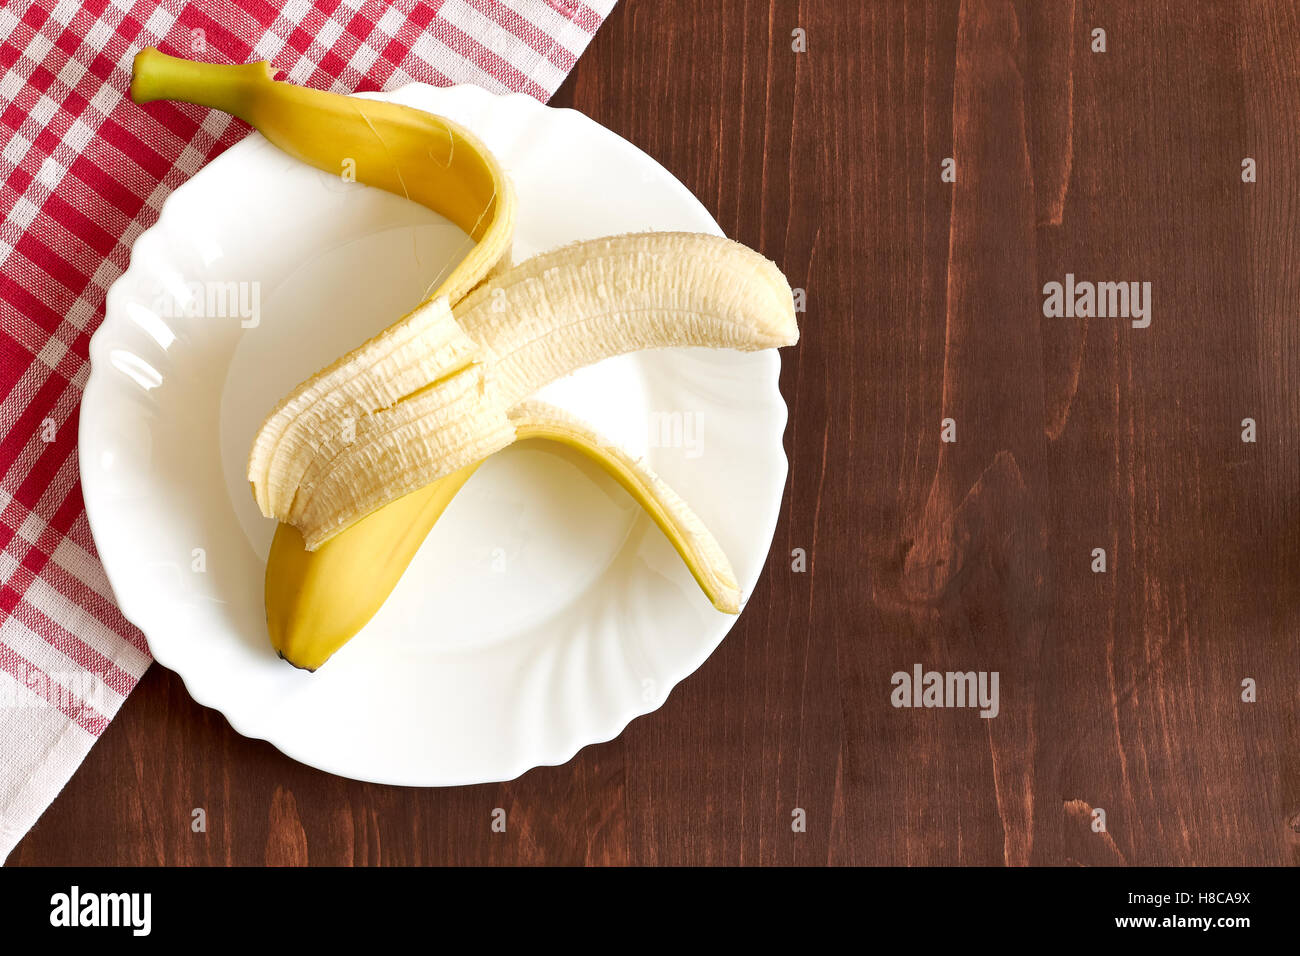 Une banane pelée sur plaque blanche. Concept de droit dans le cadre de la diététique. Vue de dessus avec beaucoup d'espace de copie Banque D'Images